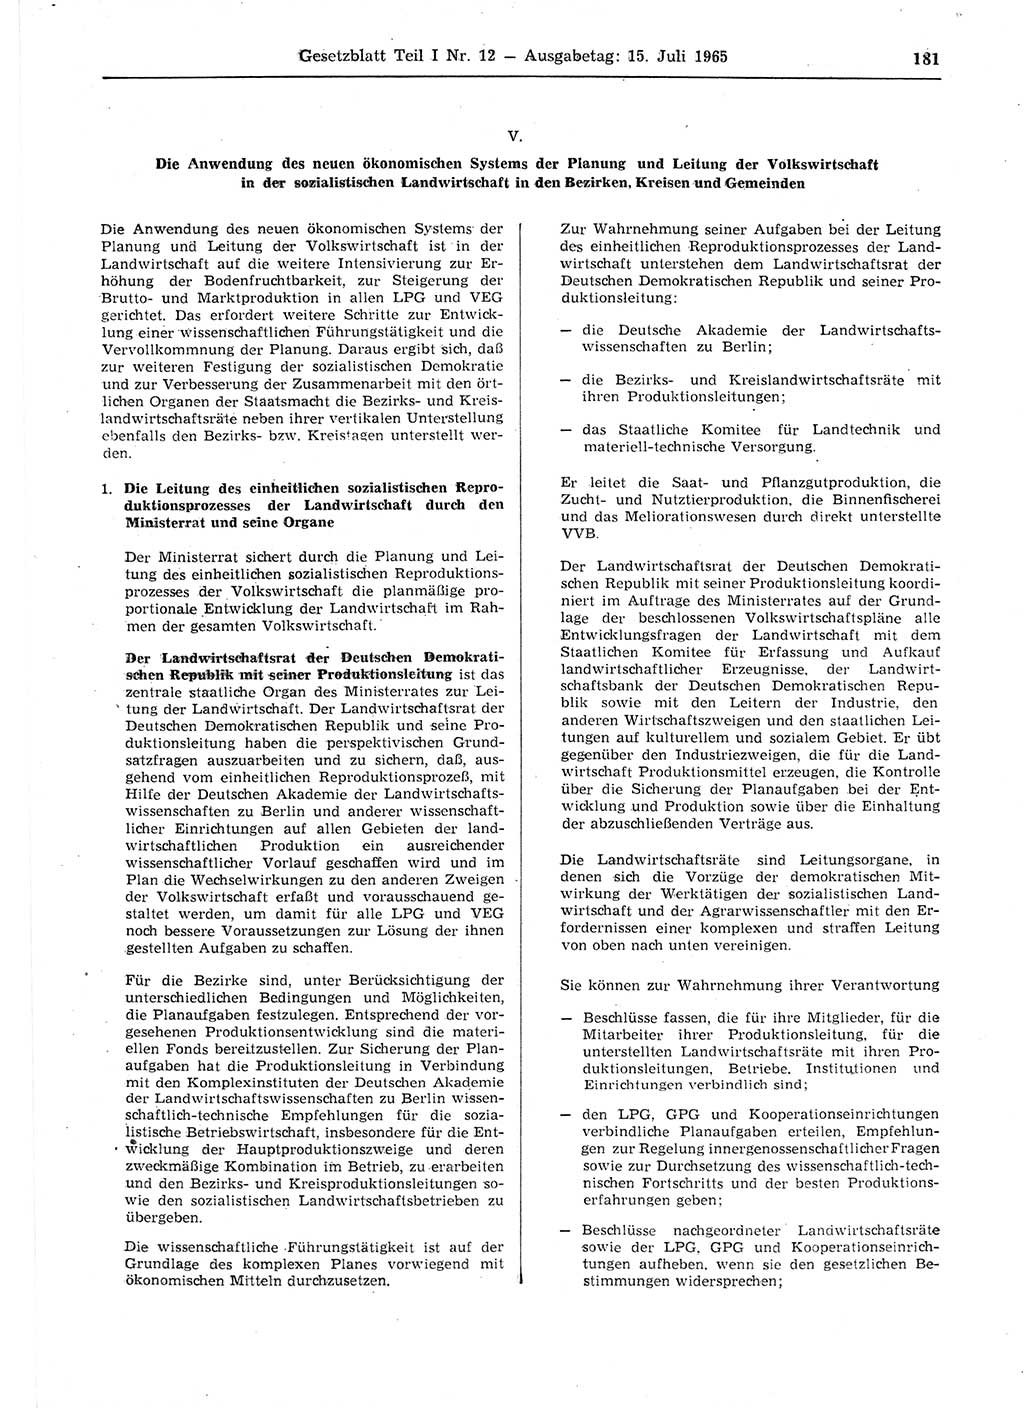 Gesetzblatt (GBl.) der Deutschen Demokratischen Republik (DDR) Teil Ⅰ 1965, Seite 181 (GBl. DDR Ⅰ 1965, S. 181)